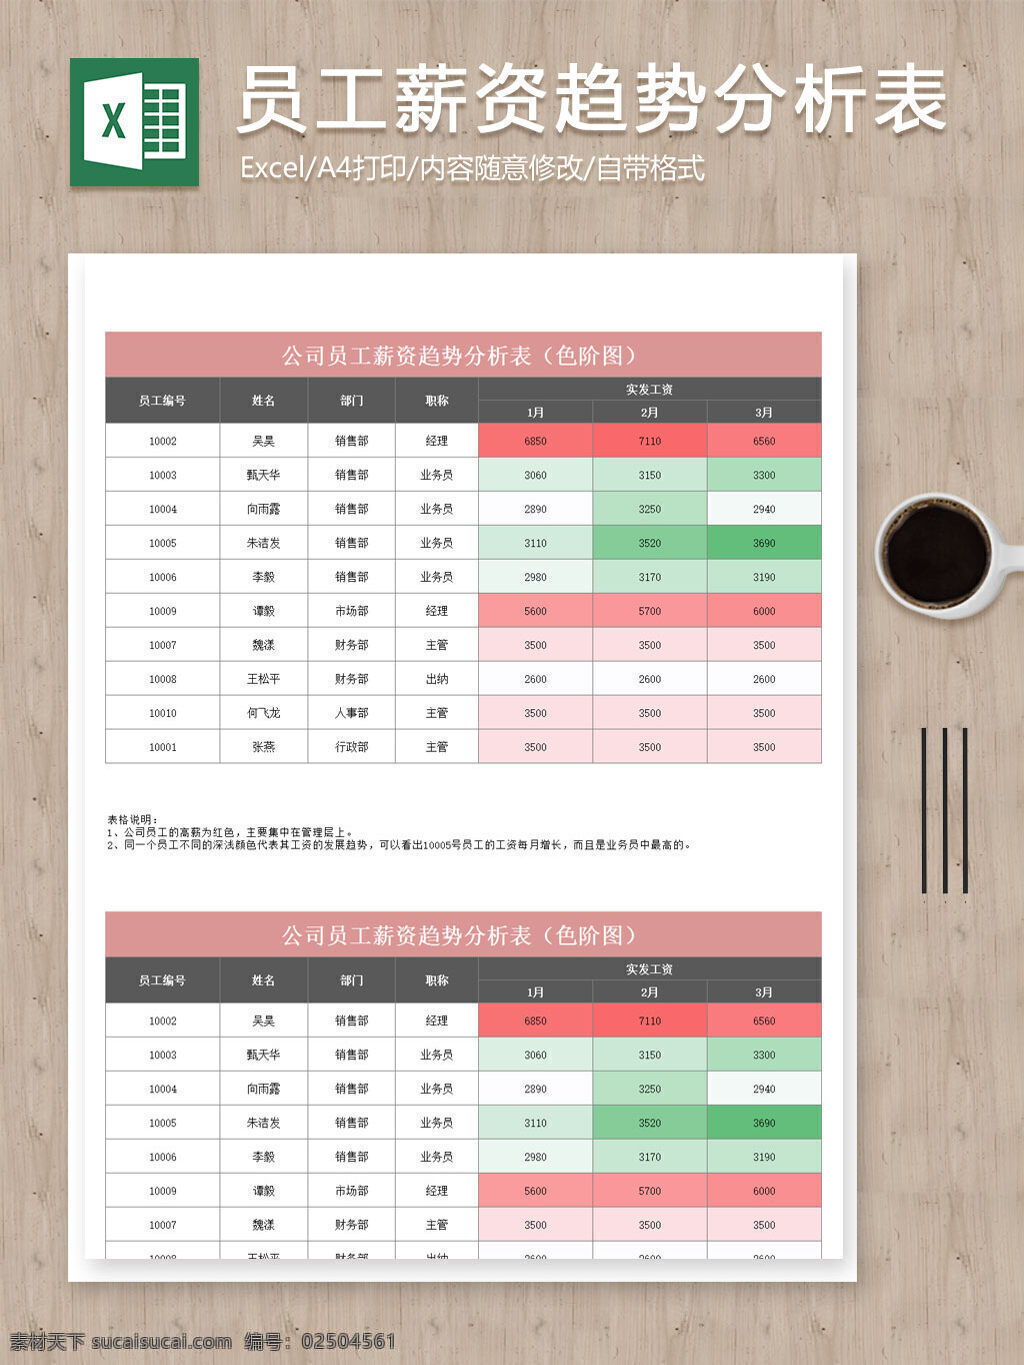 员工 薪资 统计分析 颜色 趋势 标识 excel 表格 表格模板 表格设计 分析表 图表